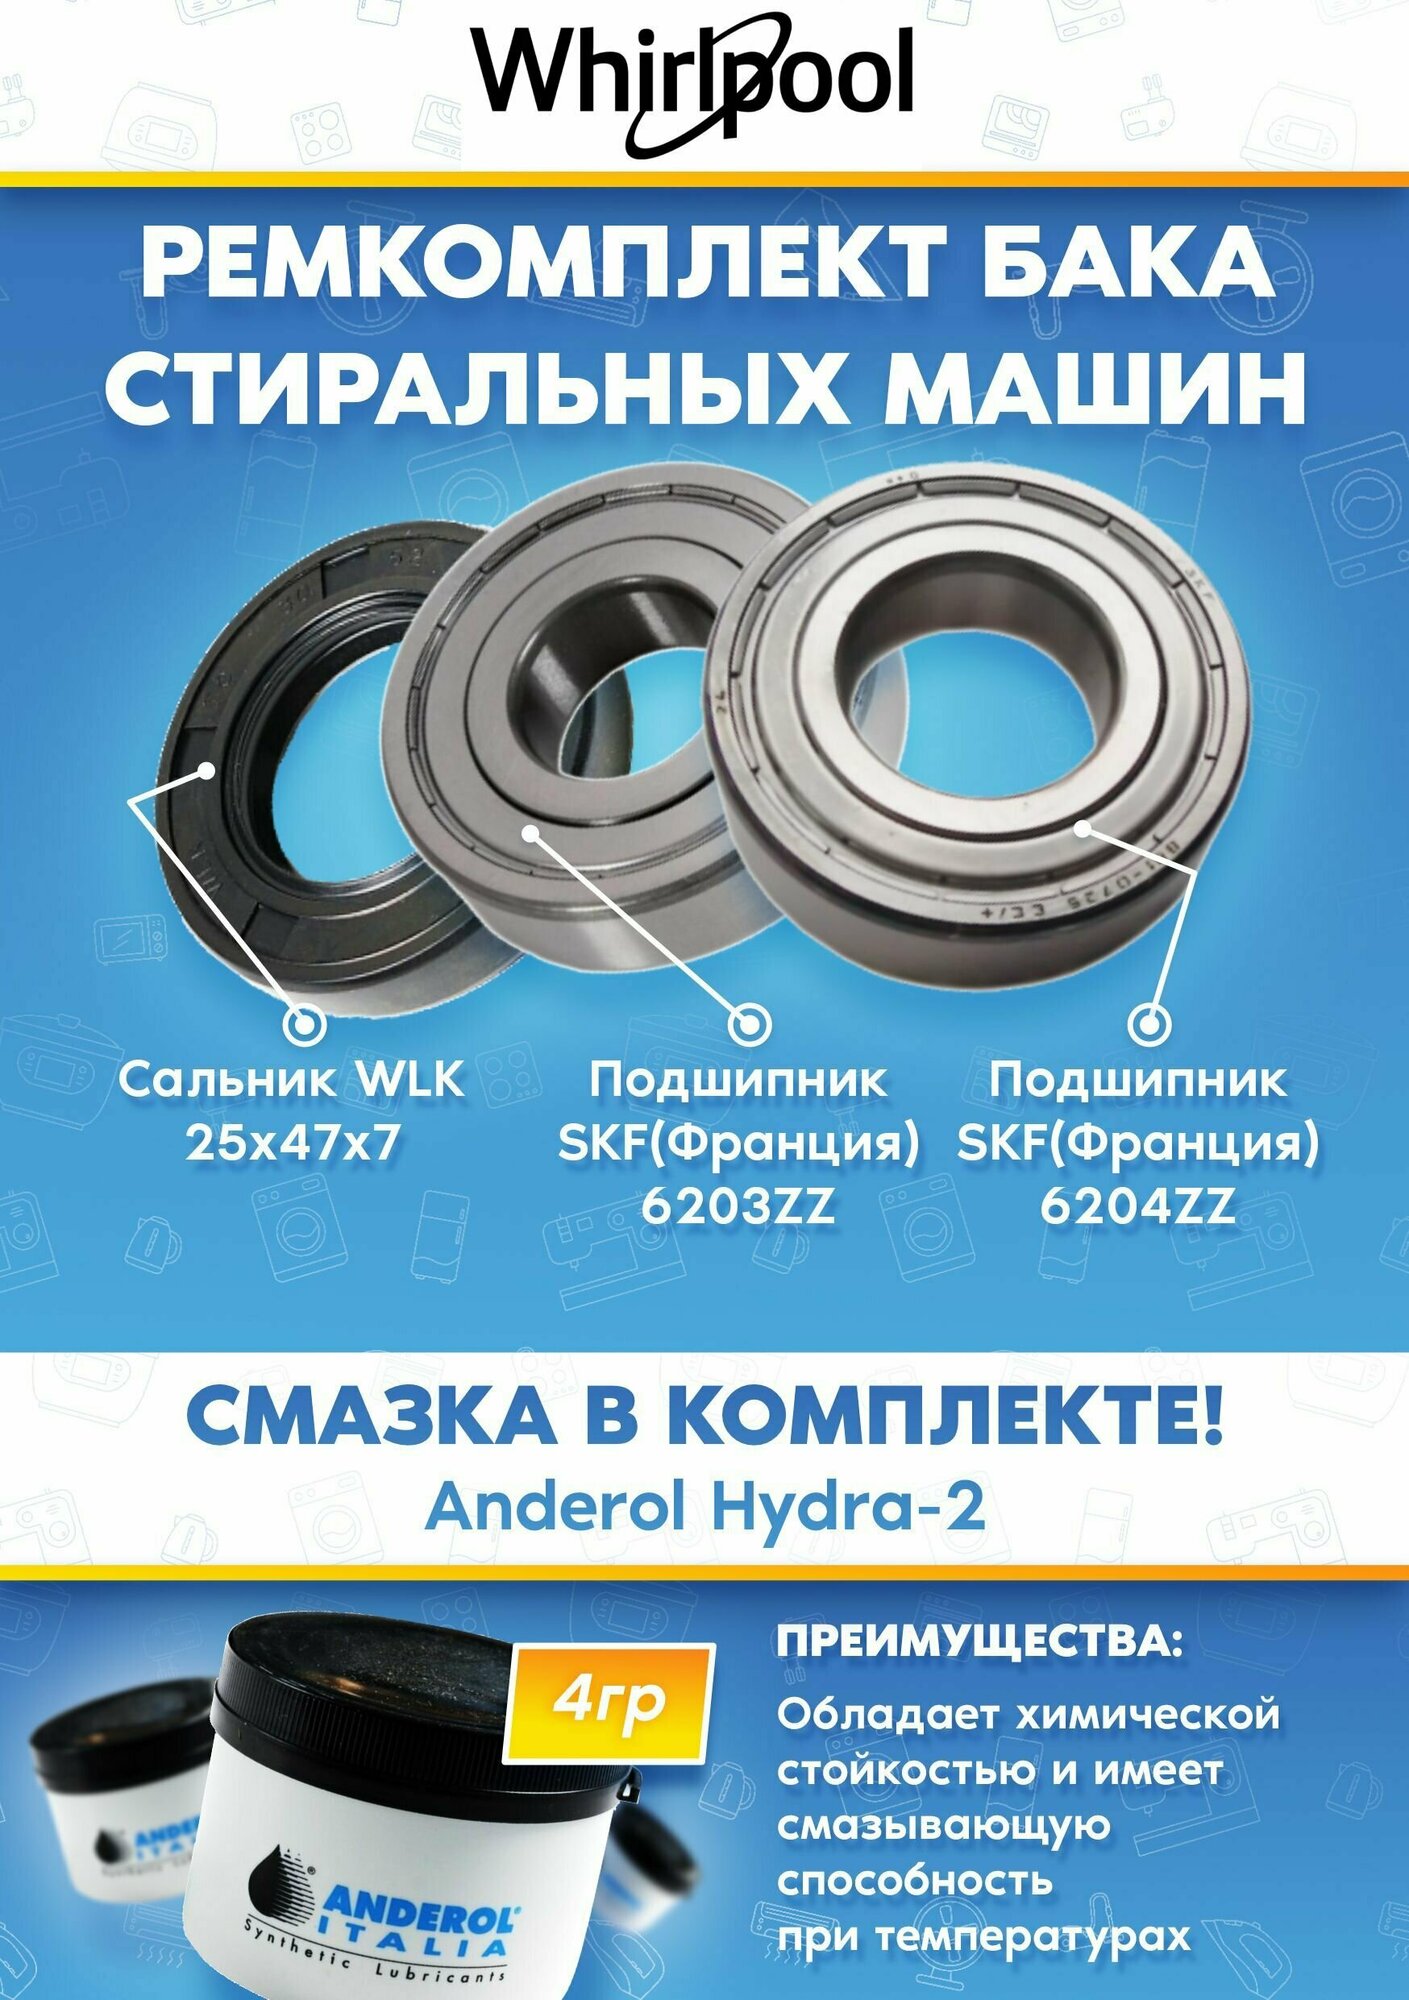 Подшипники и сальник для стиральной машины Whirlpool (подшипники 6203, 6204, сальник 25x47x7, смазка)